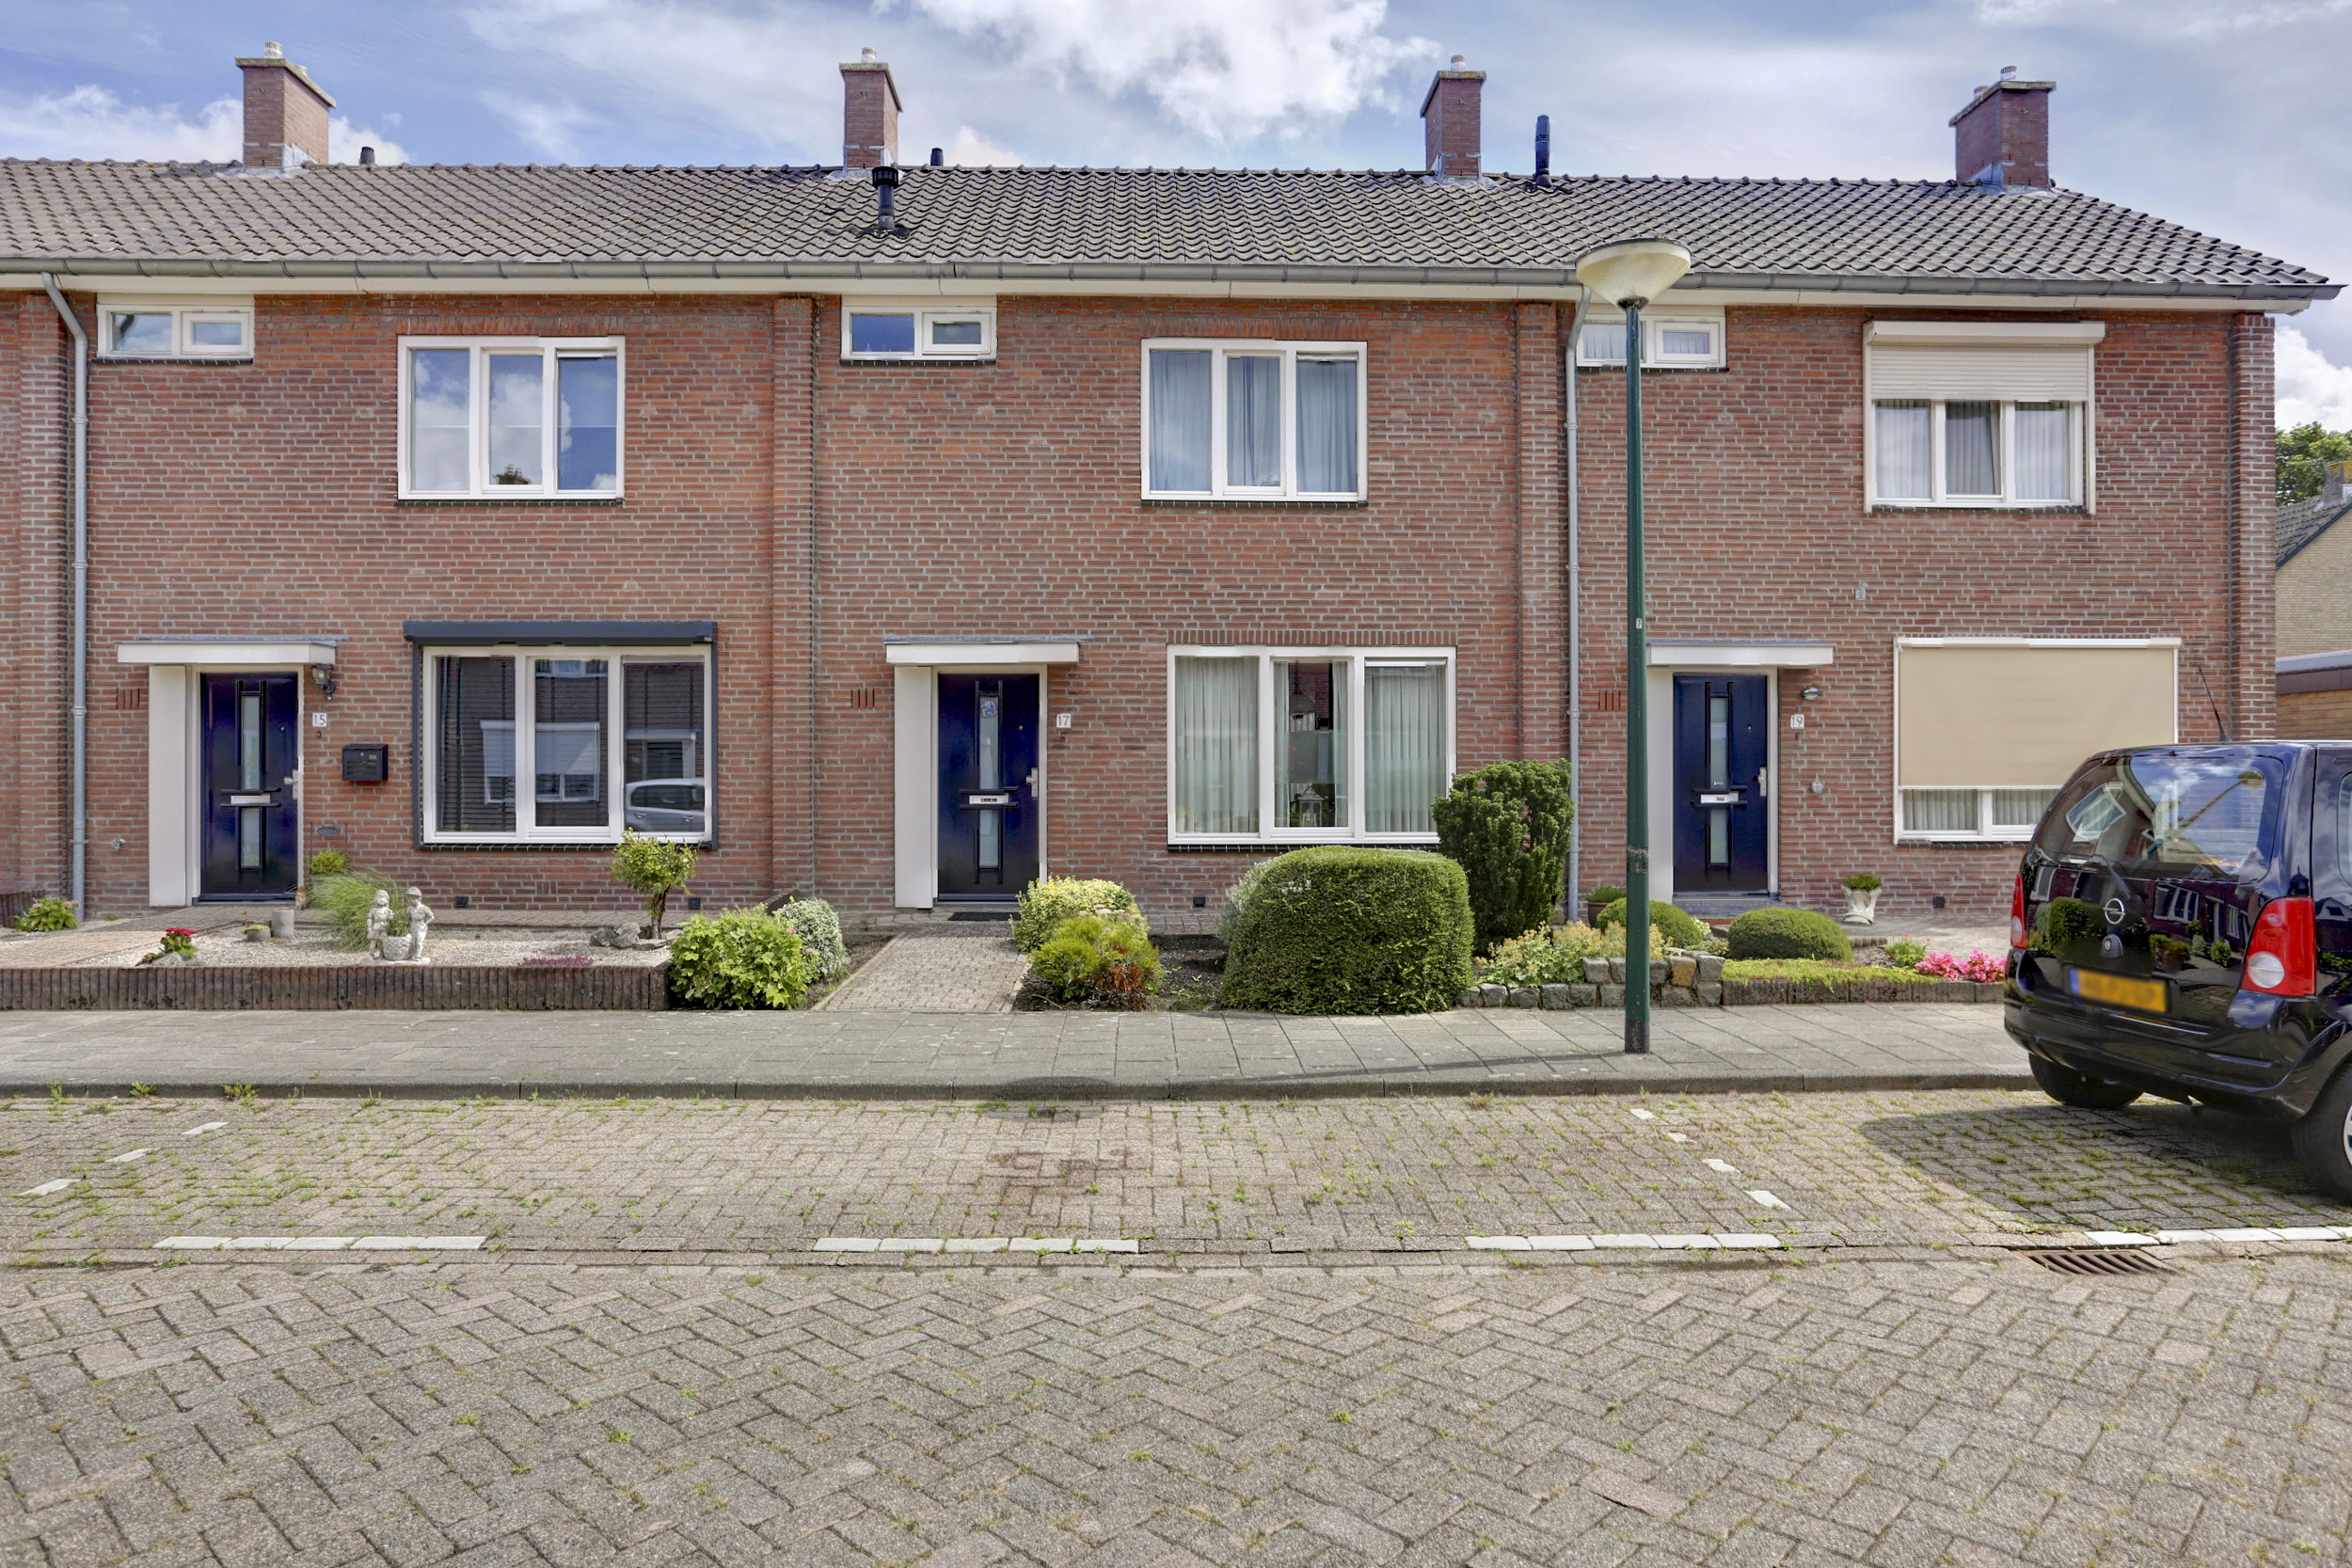 Gentiaanstraat 17, 4941 BR Raamsdonksveer, Nederland